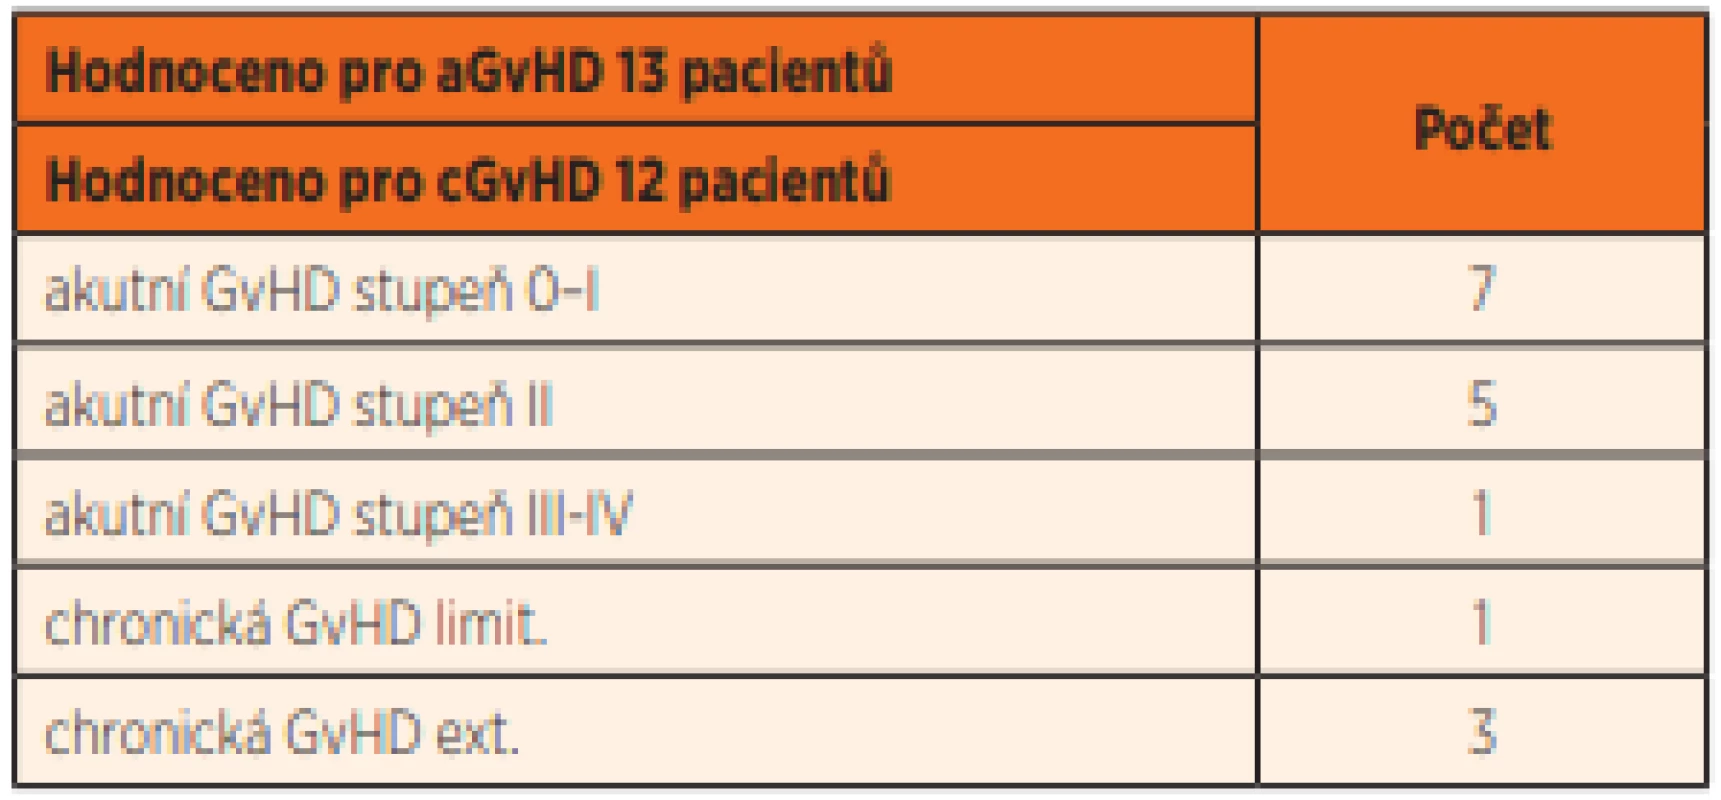 Incidence a závažnost akutní a chronické GvHD (dosažené
maximum).